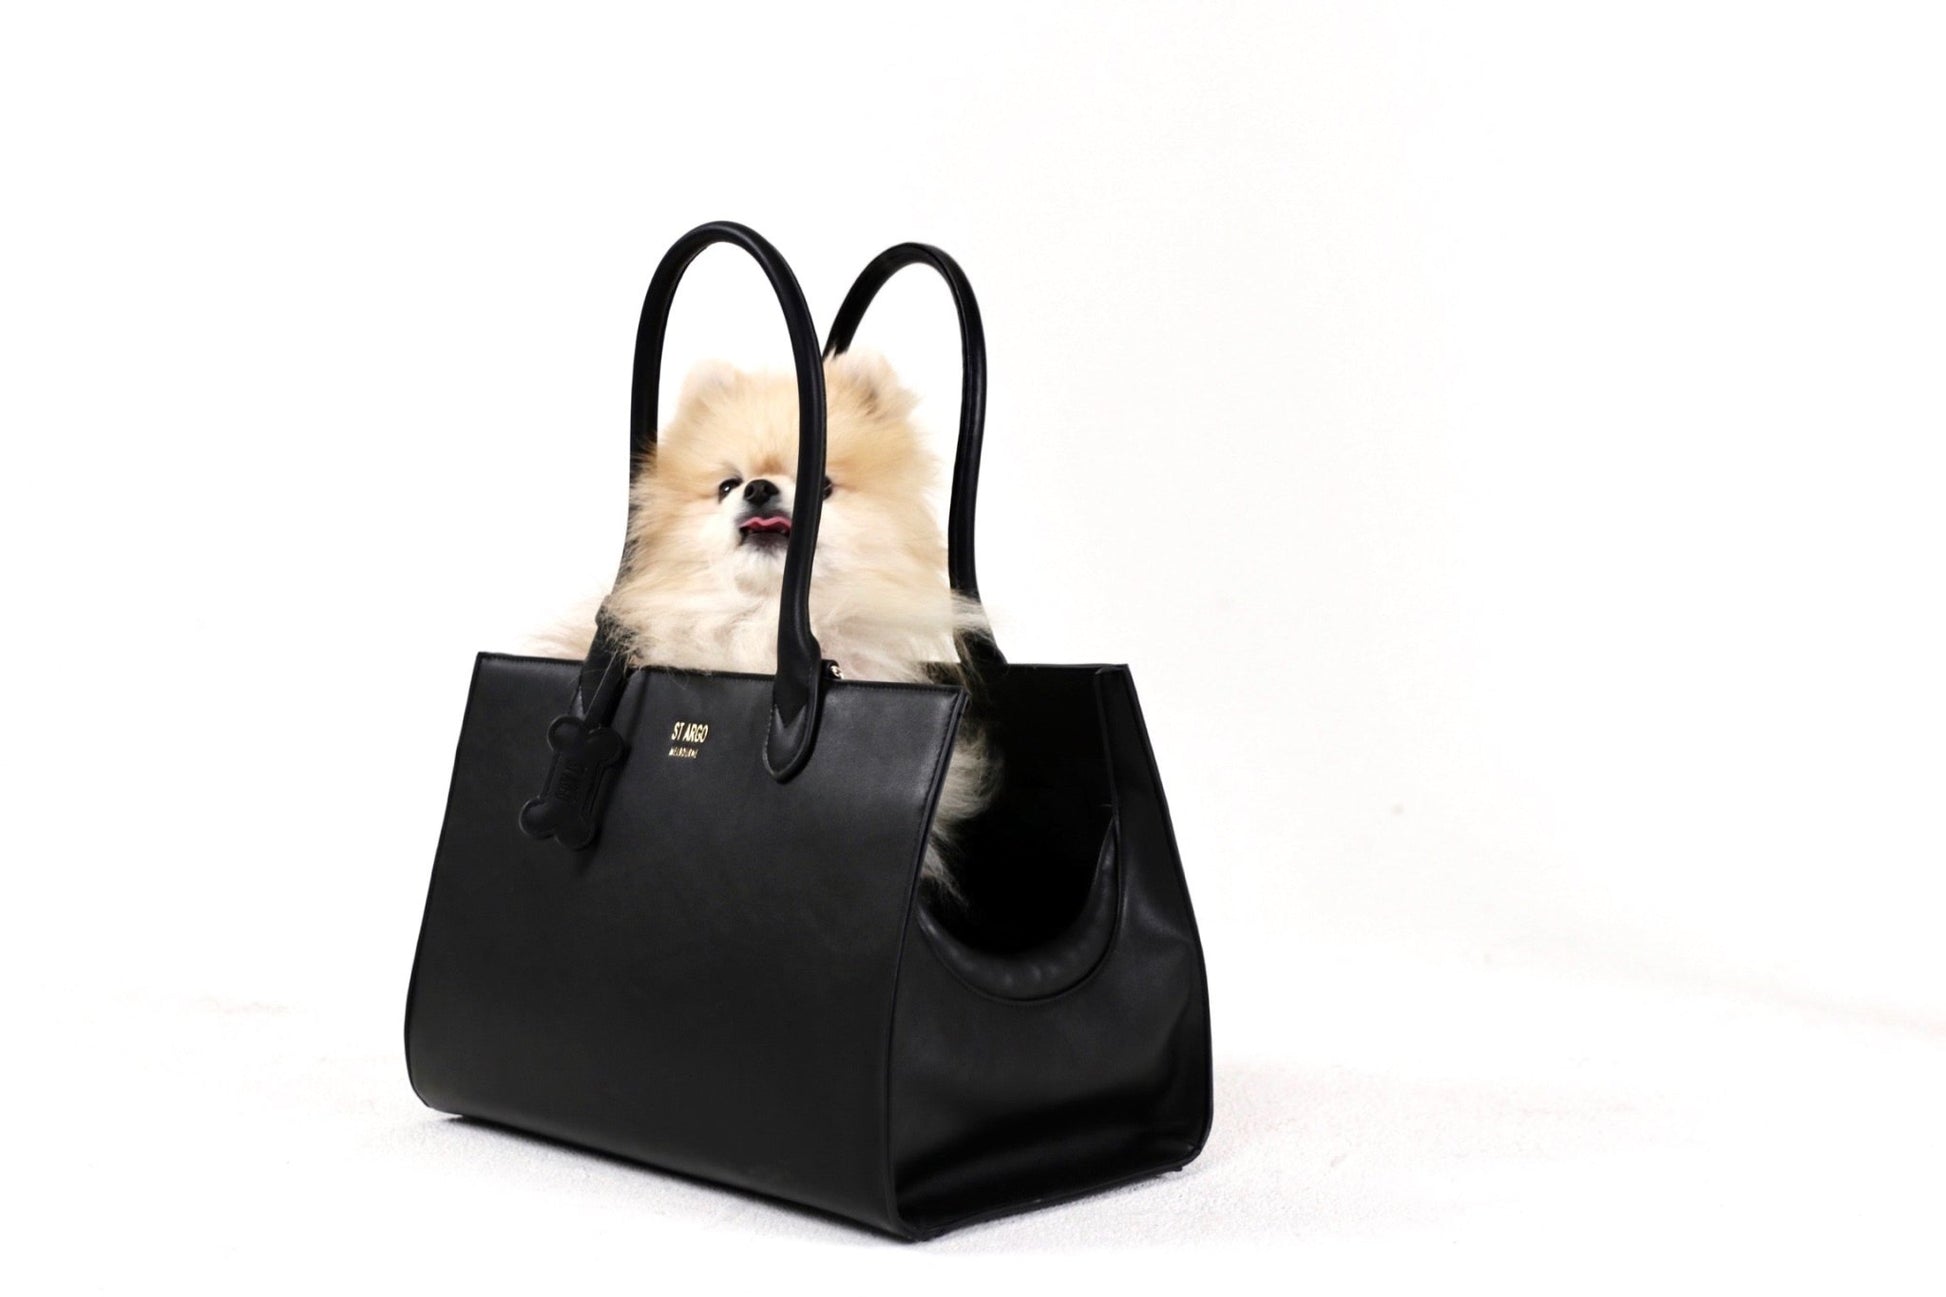 Black LOLA designer dog carrier in vegan leather with pomeranian